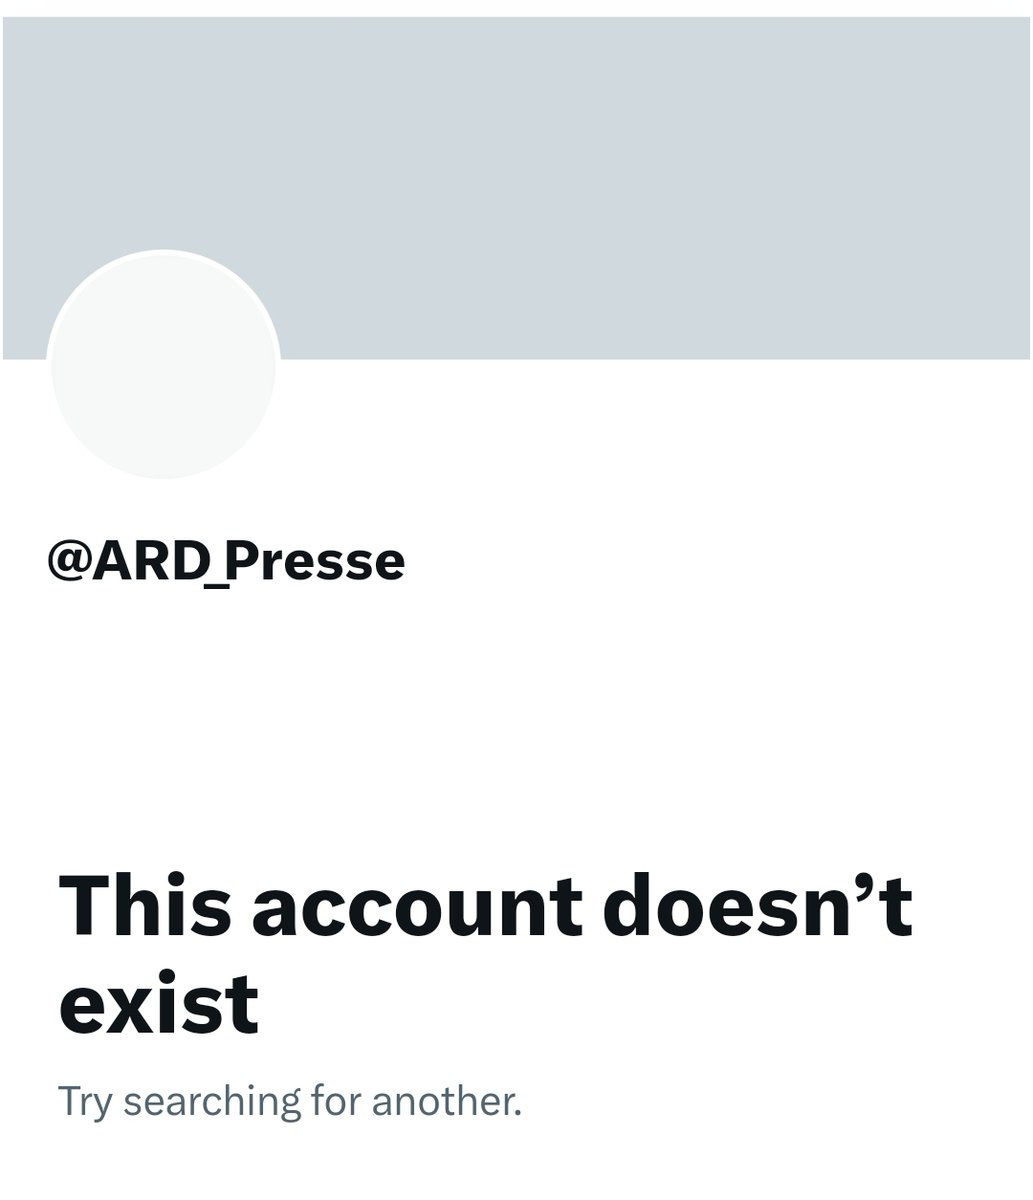 Warum wurde der X-Account der ARD Presse gelöscht? #ReformOerr #OerrBlog